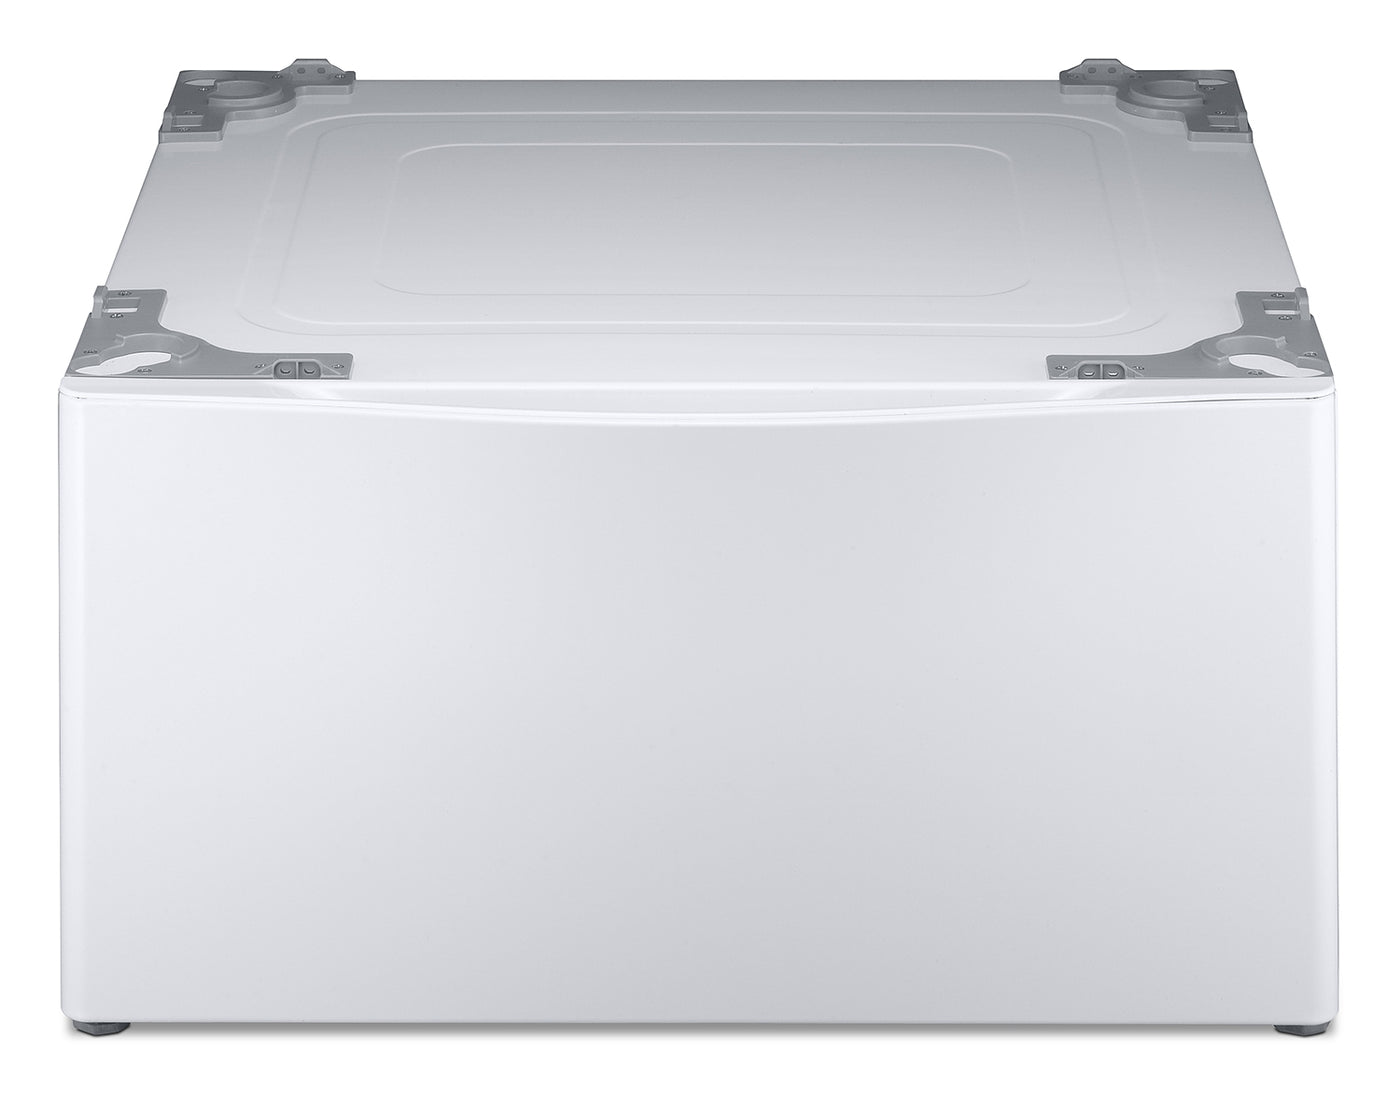 LG Appliances White 13" Laundry Pedestal w/ Storage - WDP4W